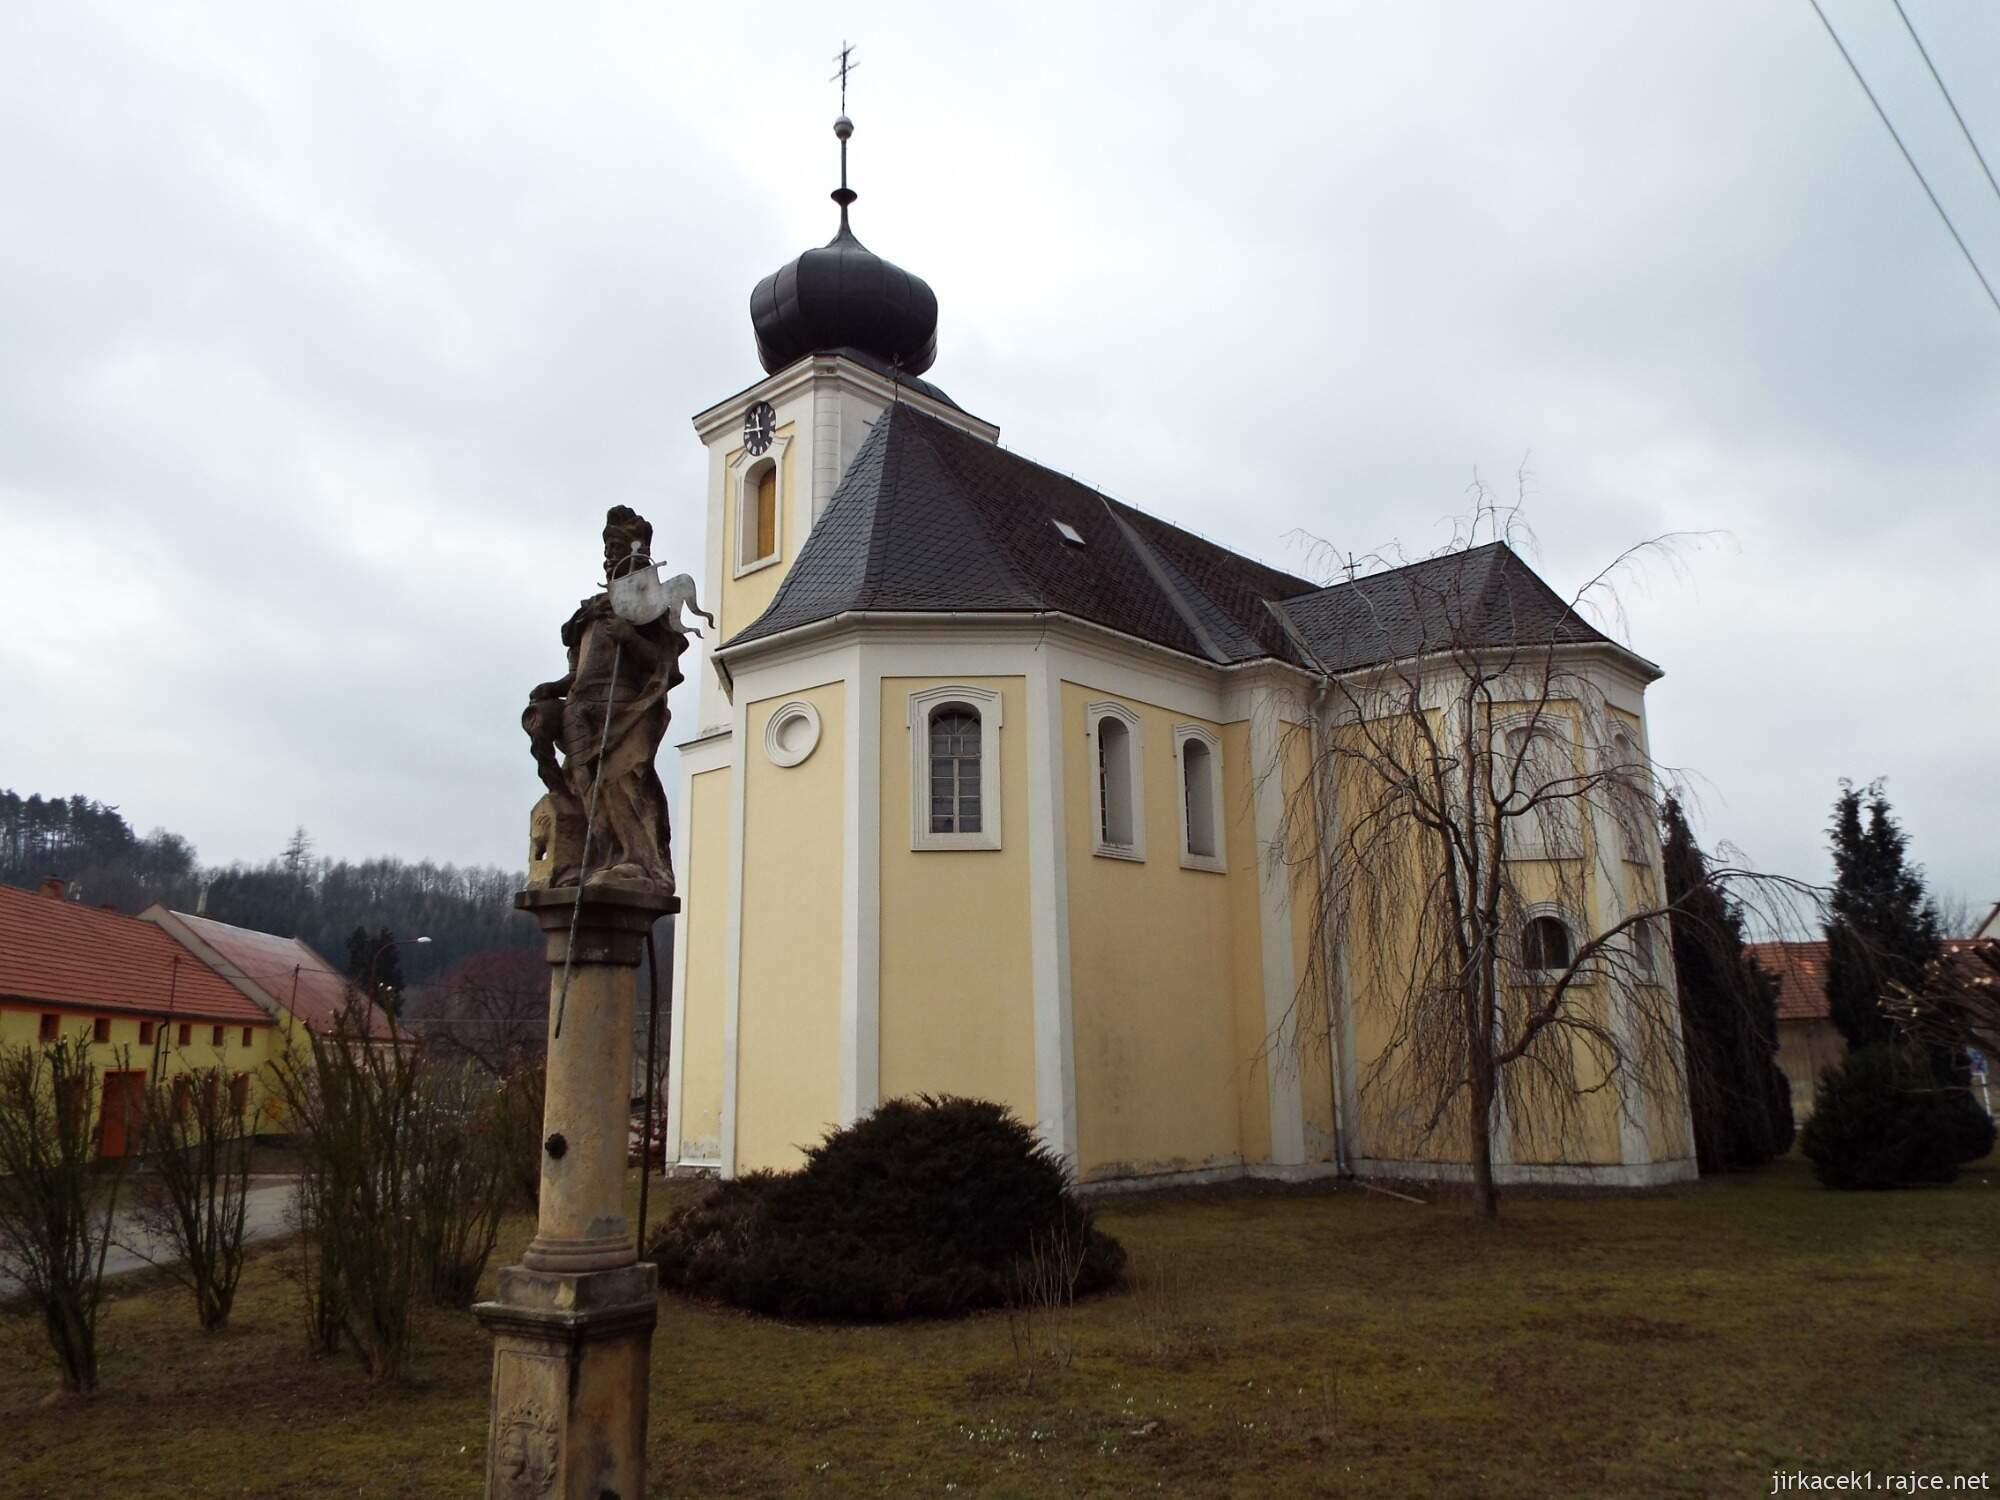 02 - Jaroměřice - Kostel Všech svatých 13 - zadní pohled a socha sv. Floriána